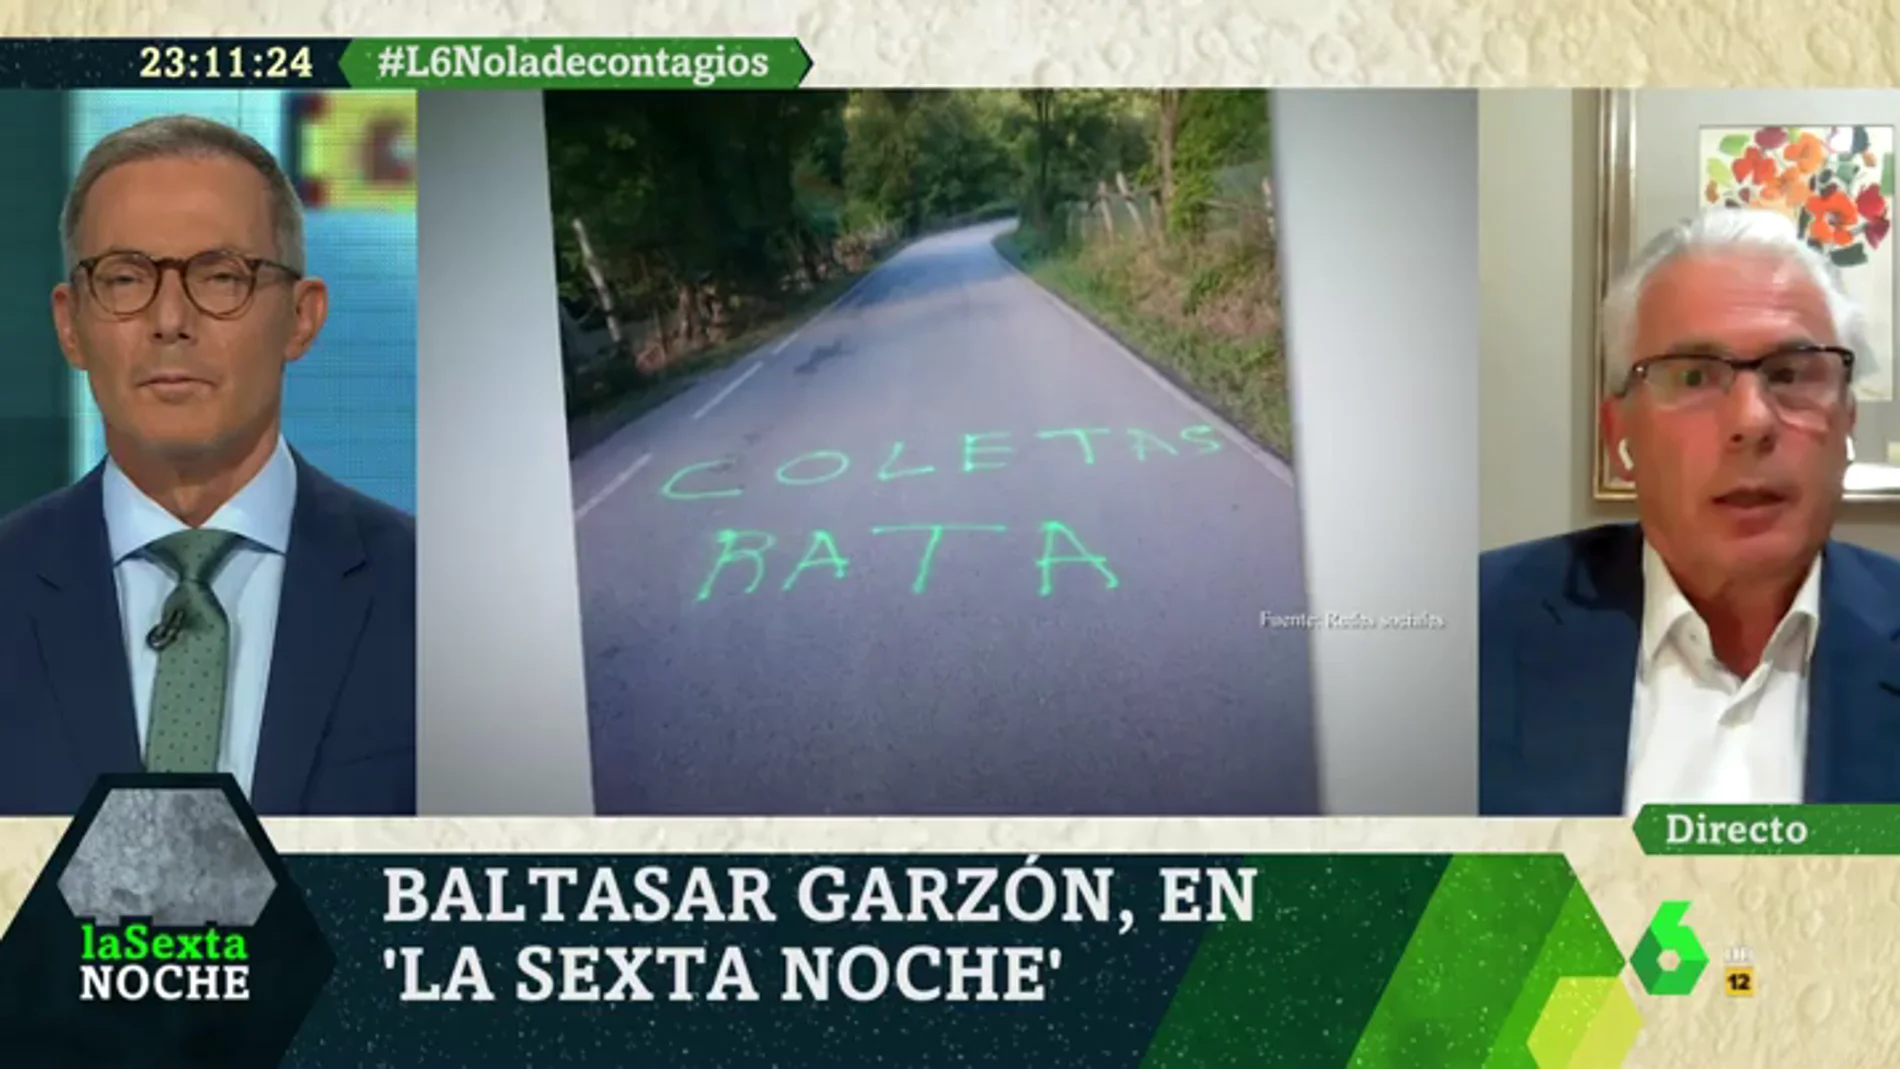 Baltasar Garzón pide investigar las amenazas a Iglesias y Montero: "Podría haber claramente un acoso"